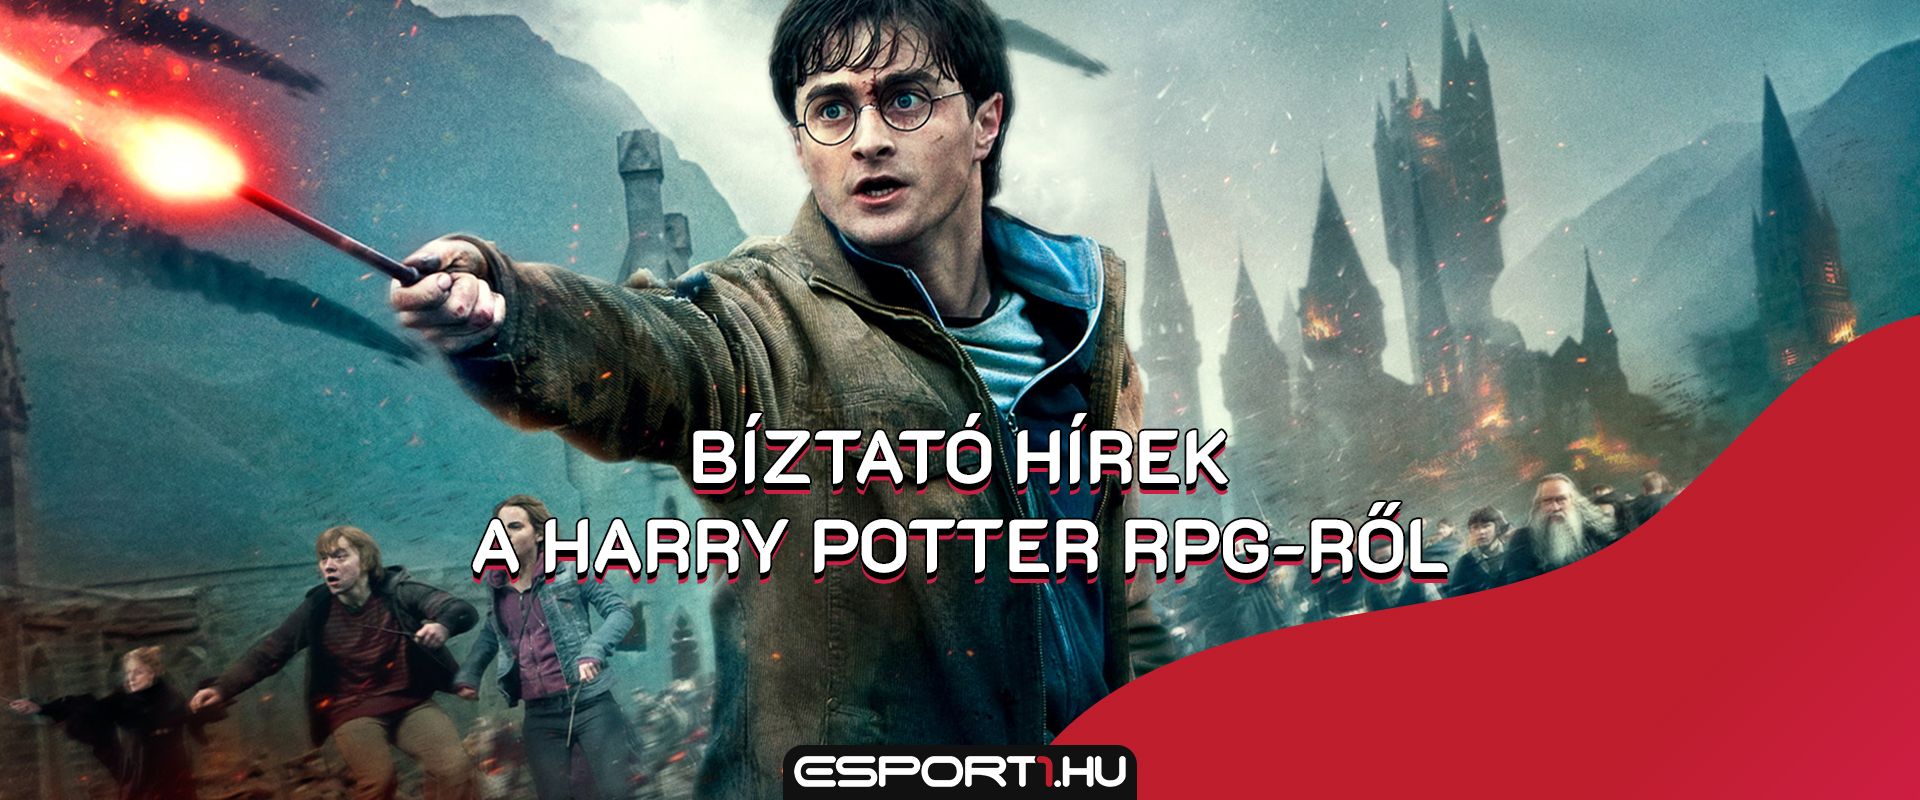 Még idén bemutatják a Harry Potter RPG-t, amire rajongók milliói várnak